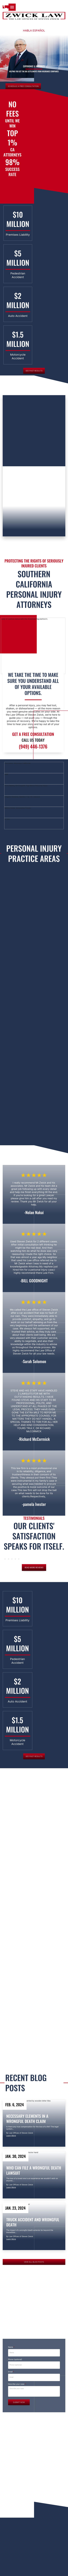 Zwick Law - Mission Viejo CA Lawyers